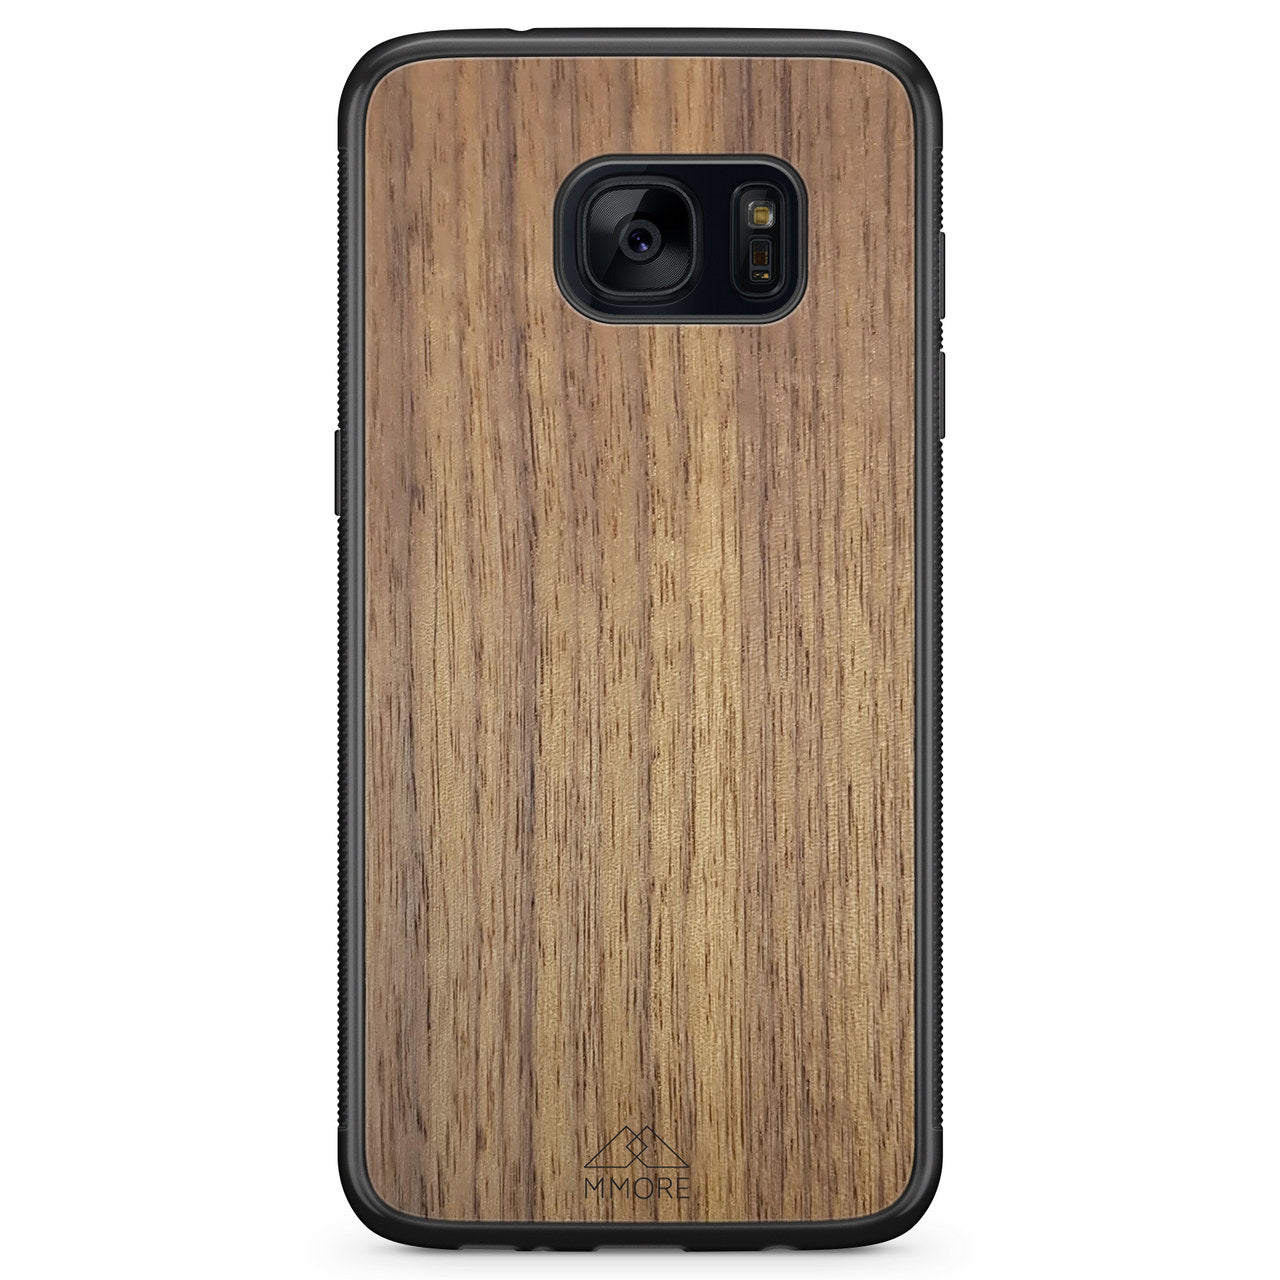 Funda de madera para teléfono Samsung S7 de nogal americano